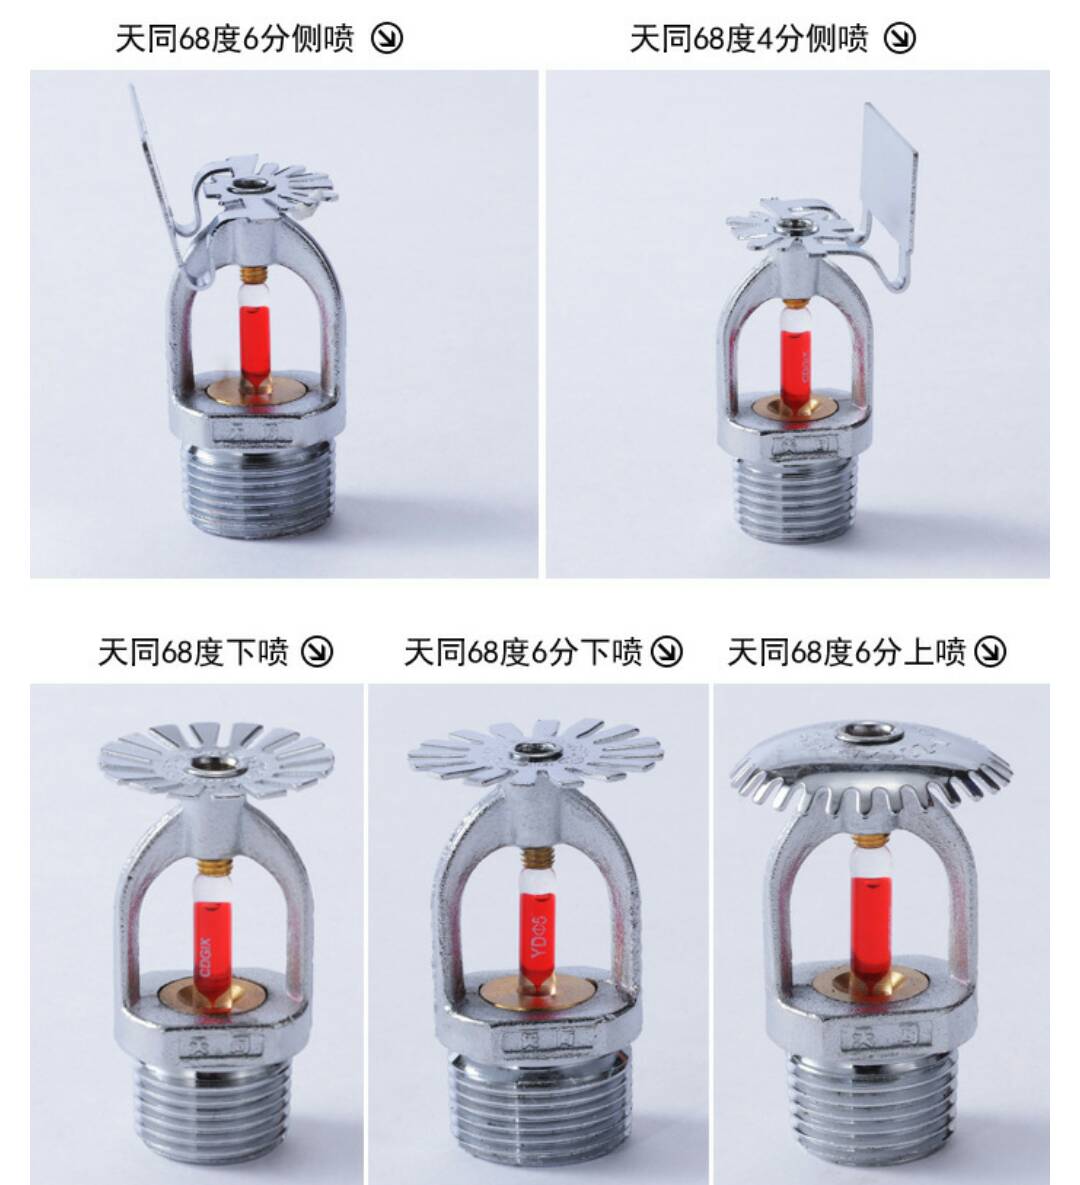 广州天河新款洒水喷头生产厂家/新款洒水喷头价格/广州洒水喷头厂家图片